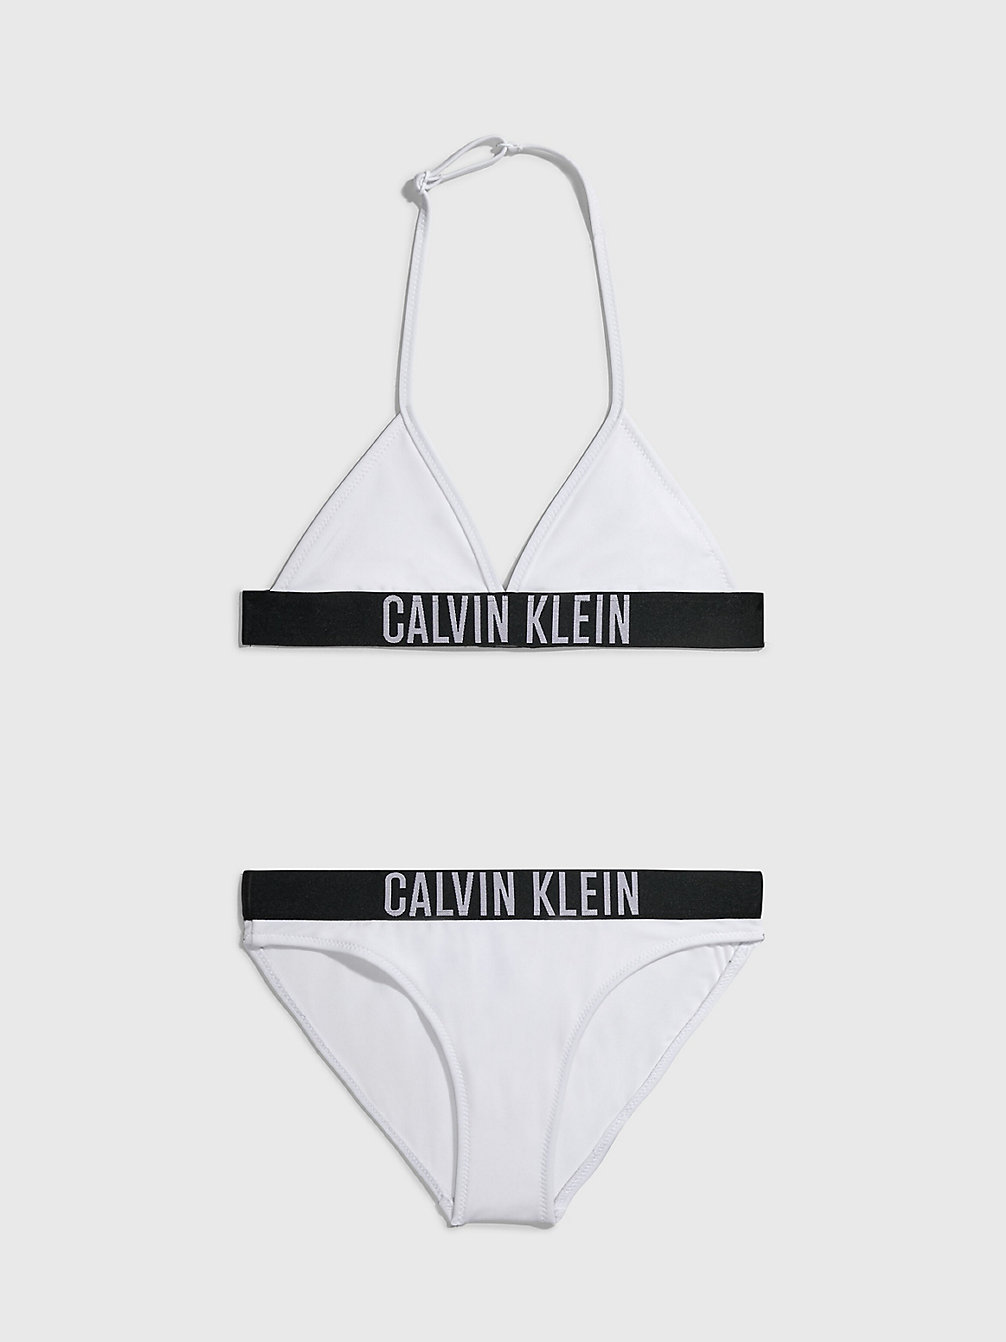 PVH CLASSIC WHITE Triangel-Bikini-Set Für Mädchen - Intense Power undefined girls Calvin Klein